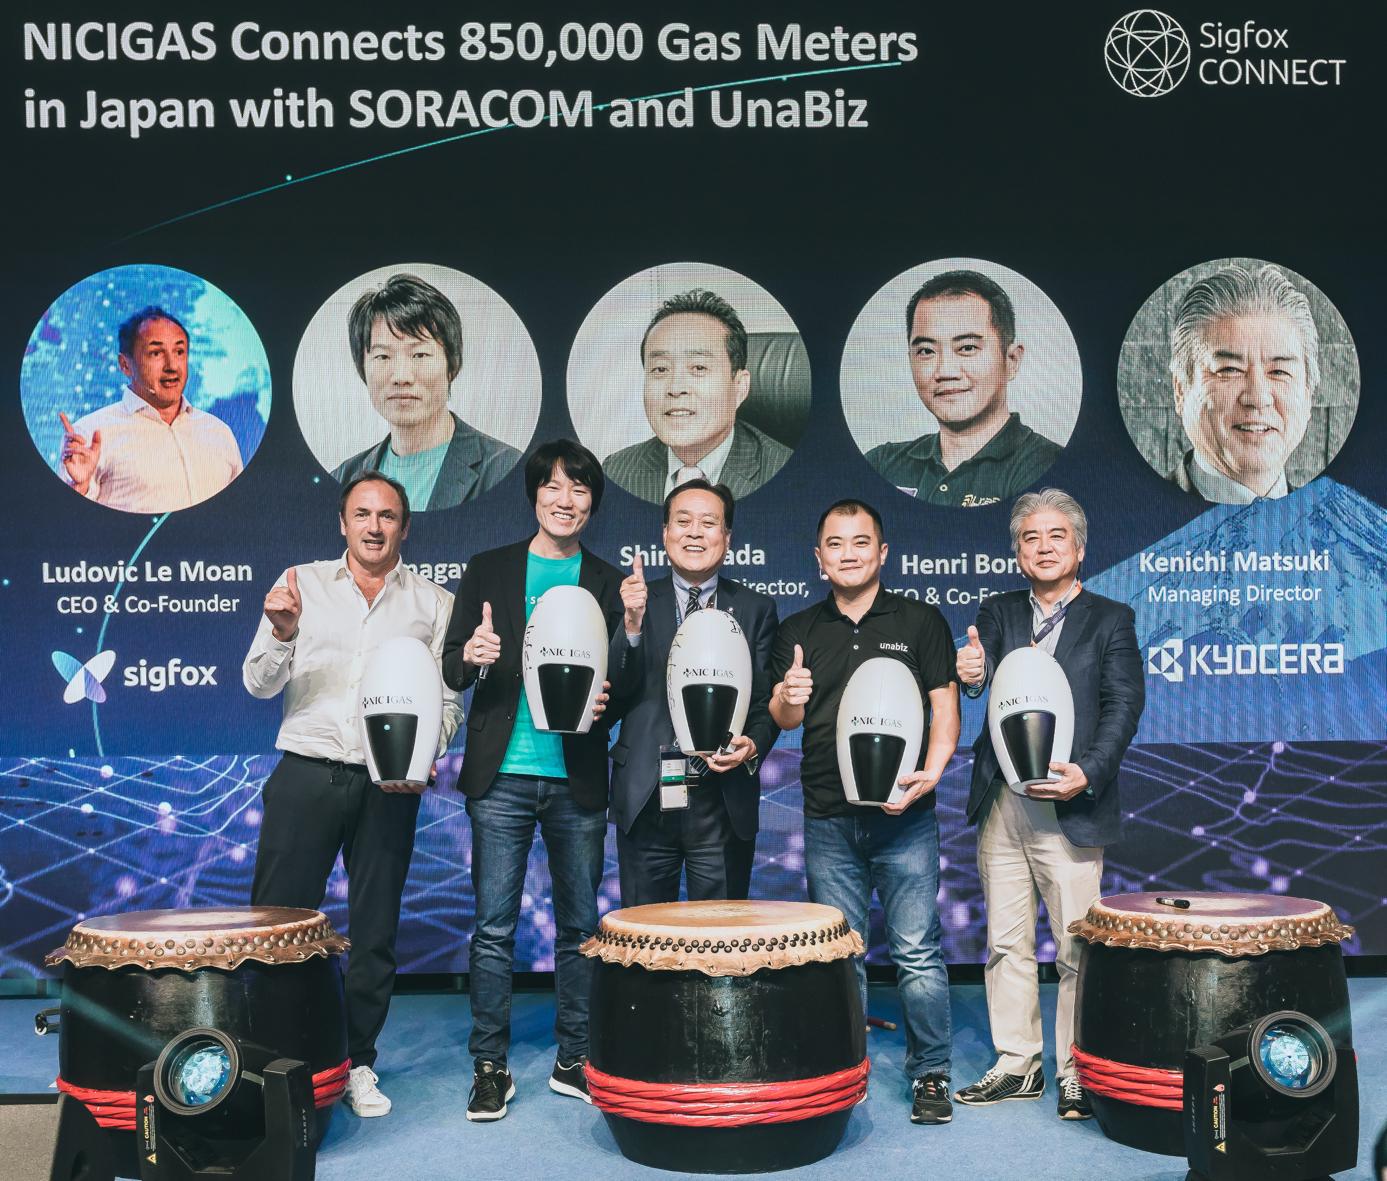 @Sigfox: #NICIGAS conecta 850,000 medidores de gas en Japón con #Soracom y #UnaBiz